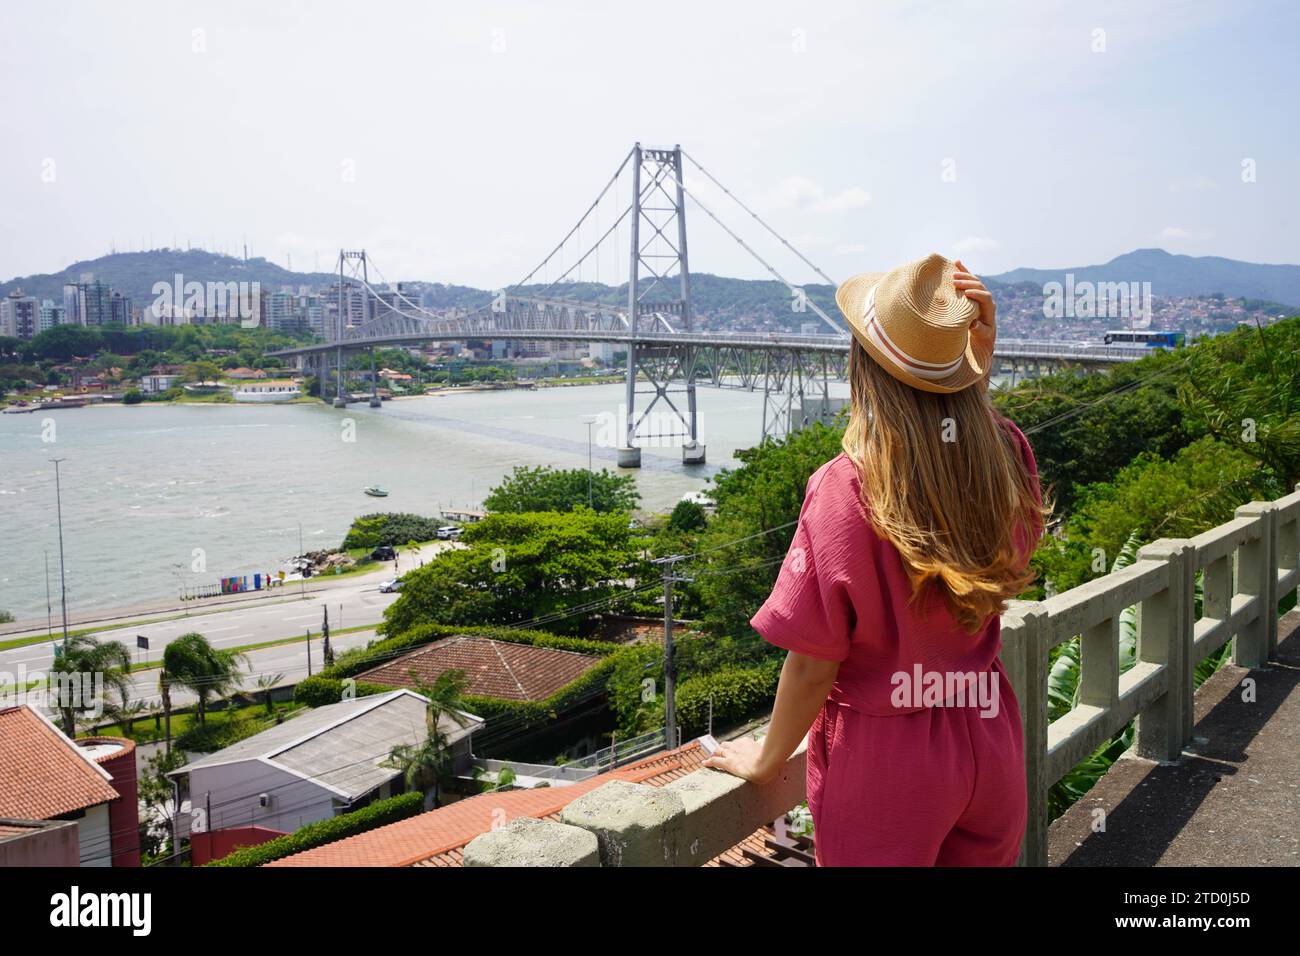 Turismo a Florianopolis, Brasile. Vista posteriore della bellissima ragazza viaggiatrice che si gode la vista del ponte Hercilio Luz a Florianopolis, Brasile. Vacanze estive Foto Stock